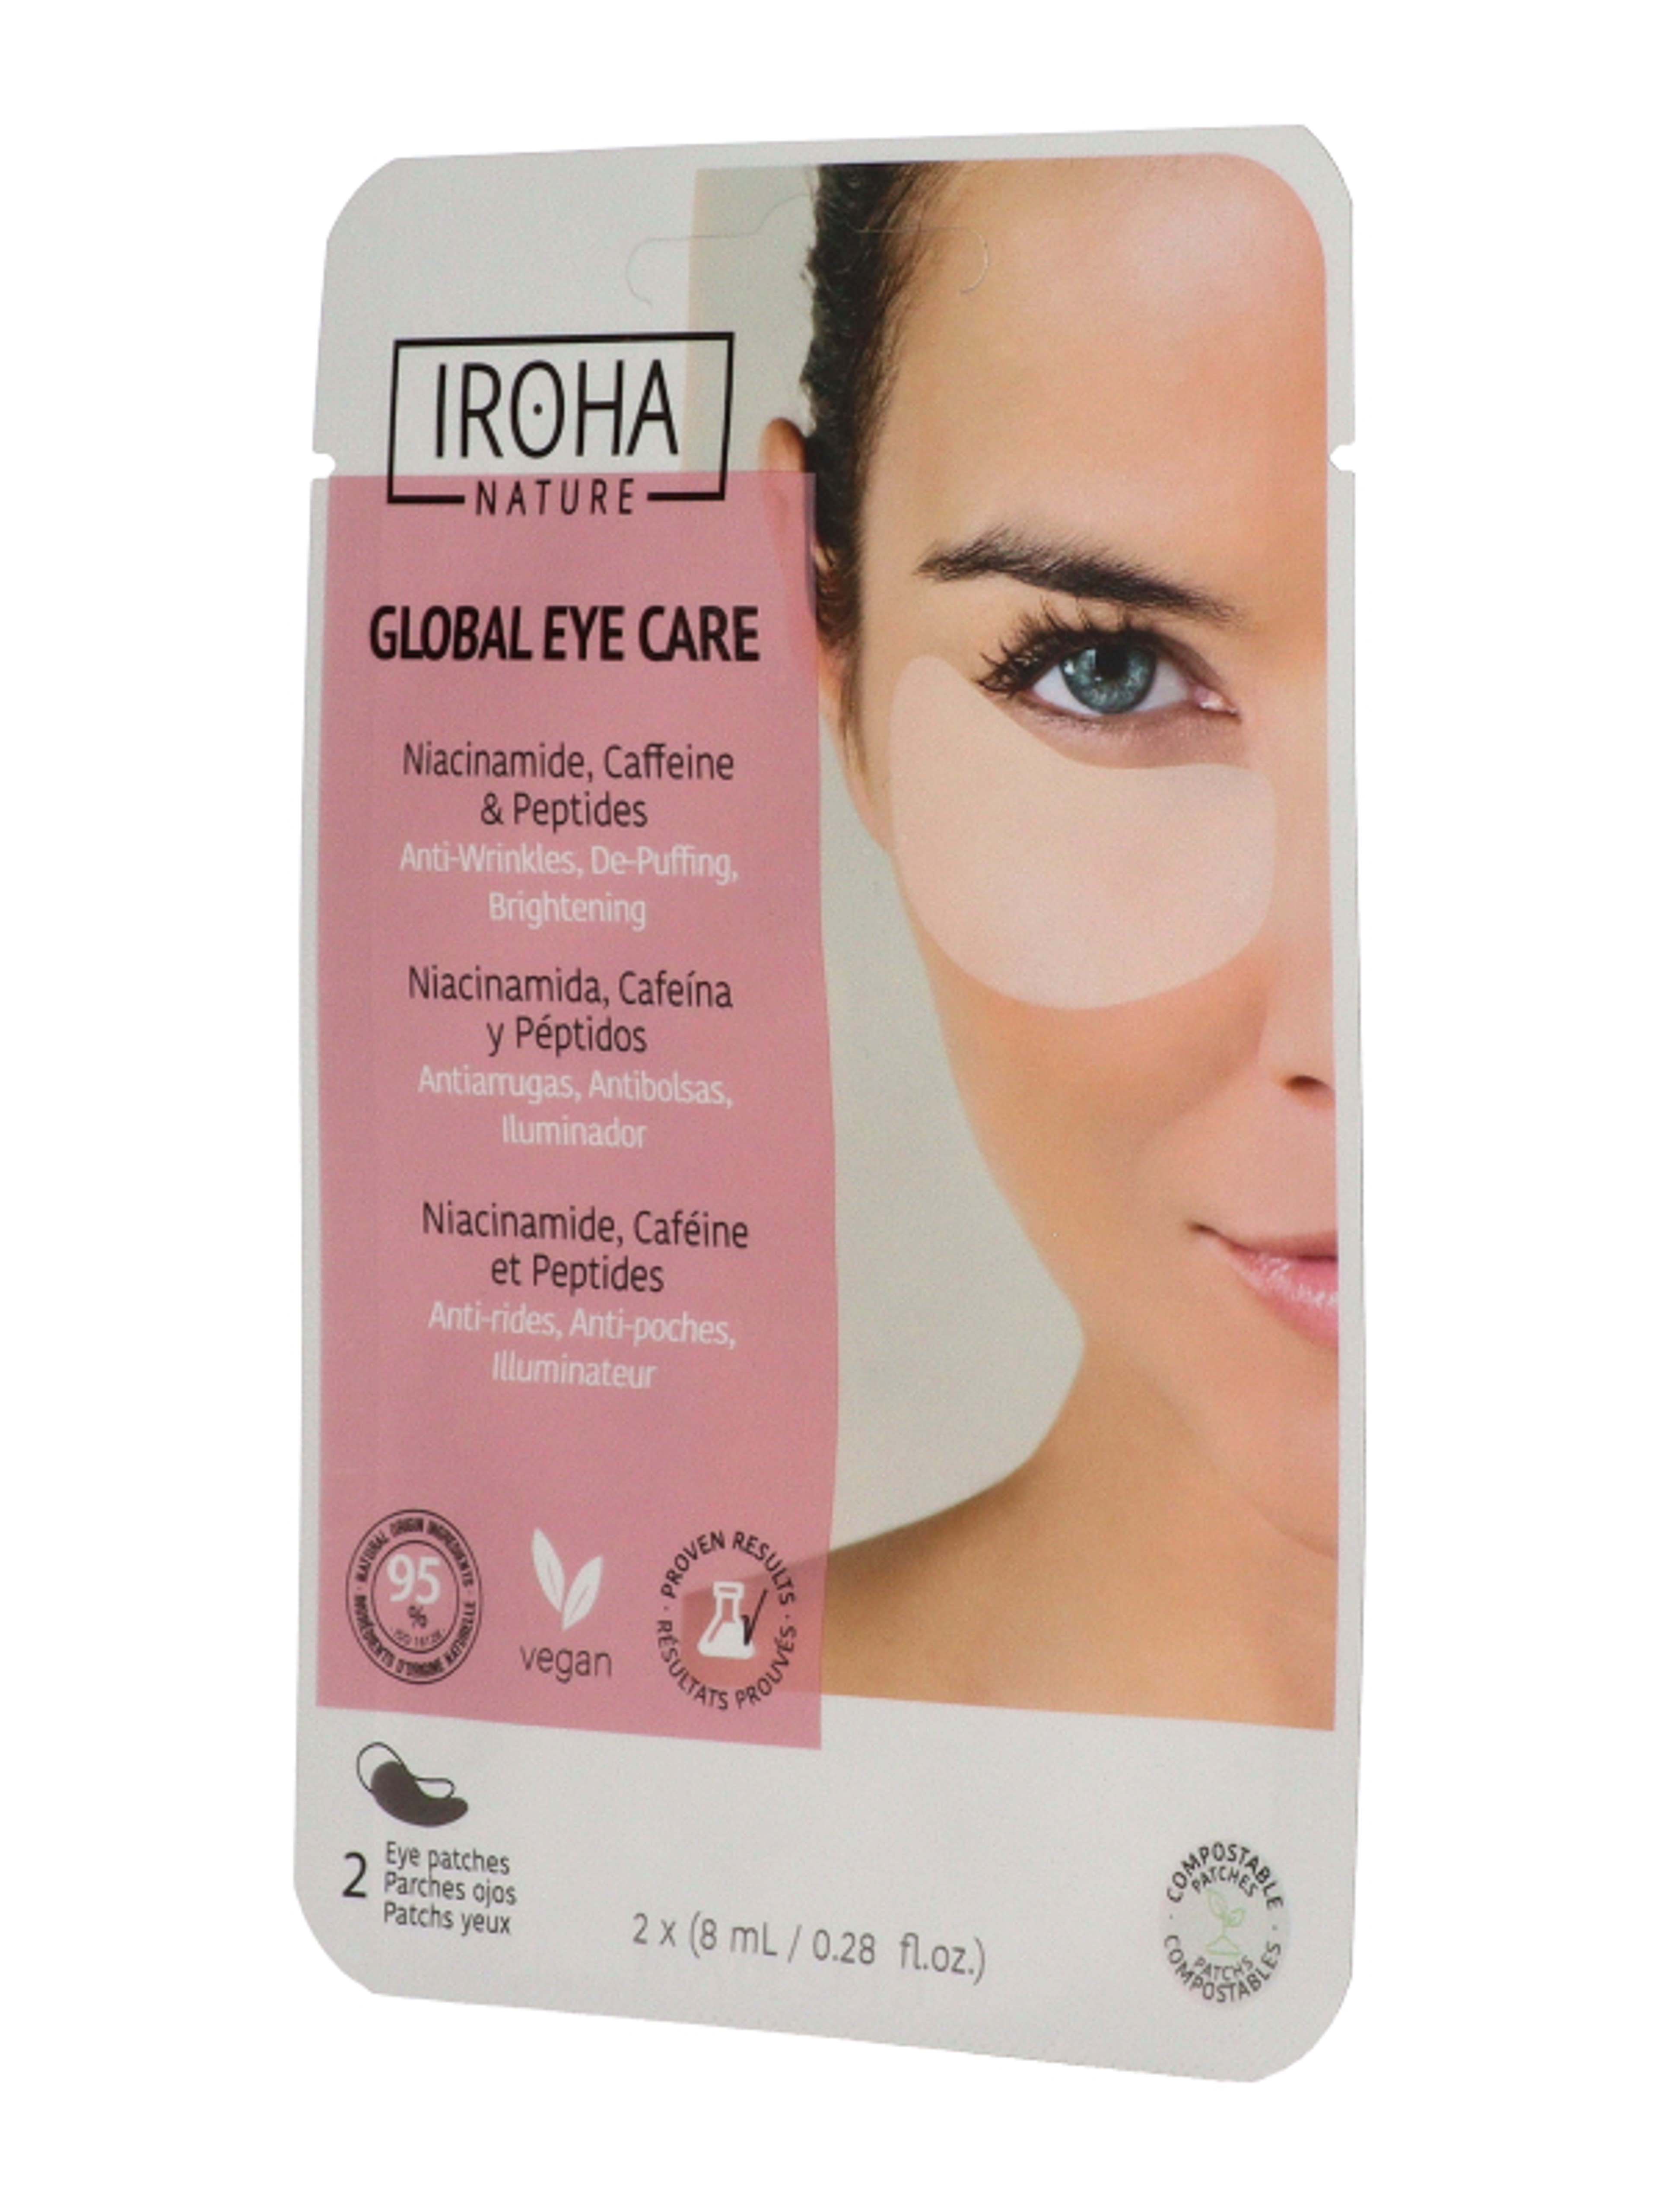 Iroha Nature Global Eyecare szemtapaszok niacinamiddal, koffeinnel és petidekkel - 2 db-2